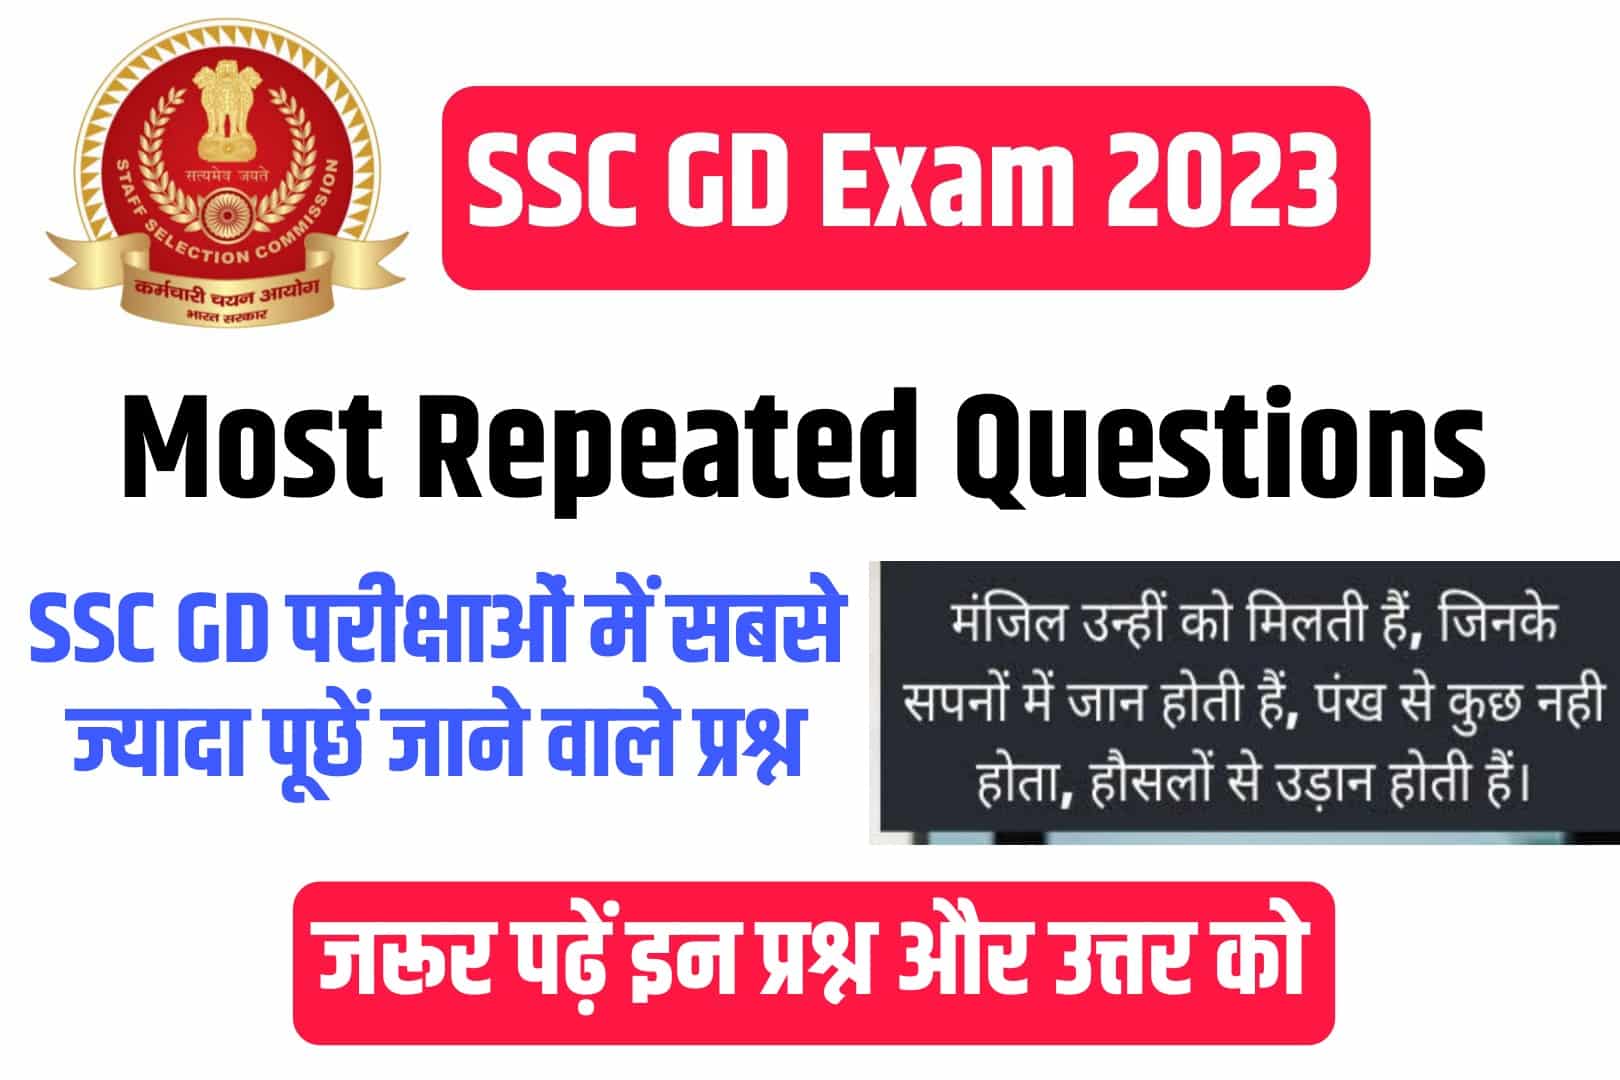 SSC GD Exam 2023 Most Repeated Questions : एसएससी जीडी की परीक्षा में सबसे ज्यादा पूछें जानें वाले प्रश्न और उत्तर